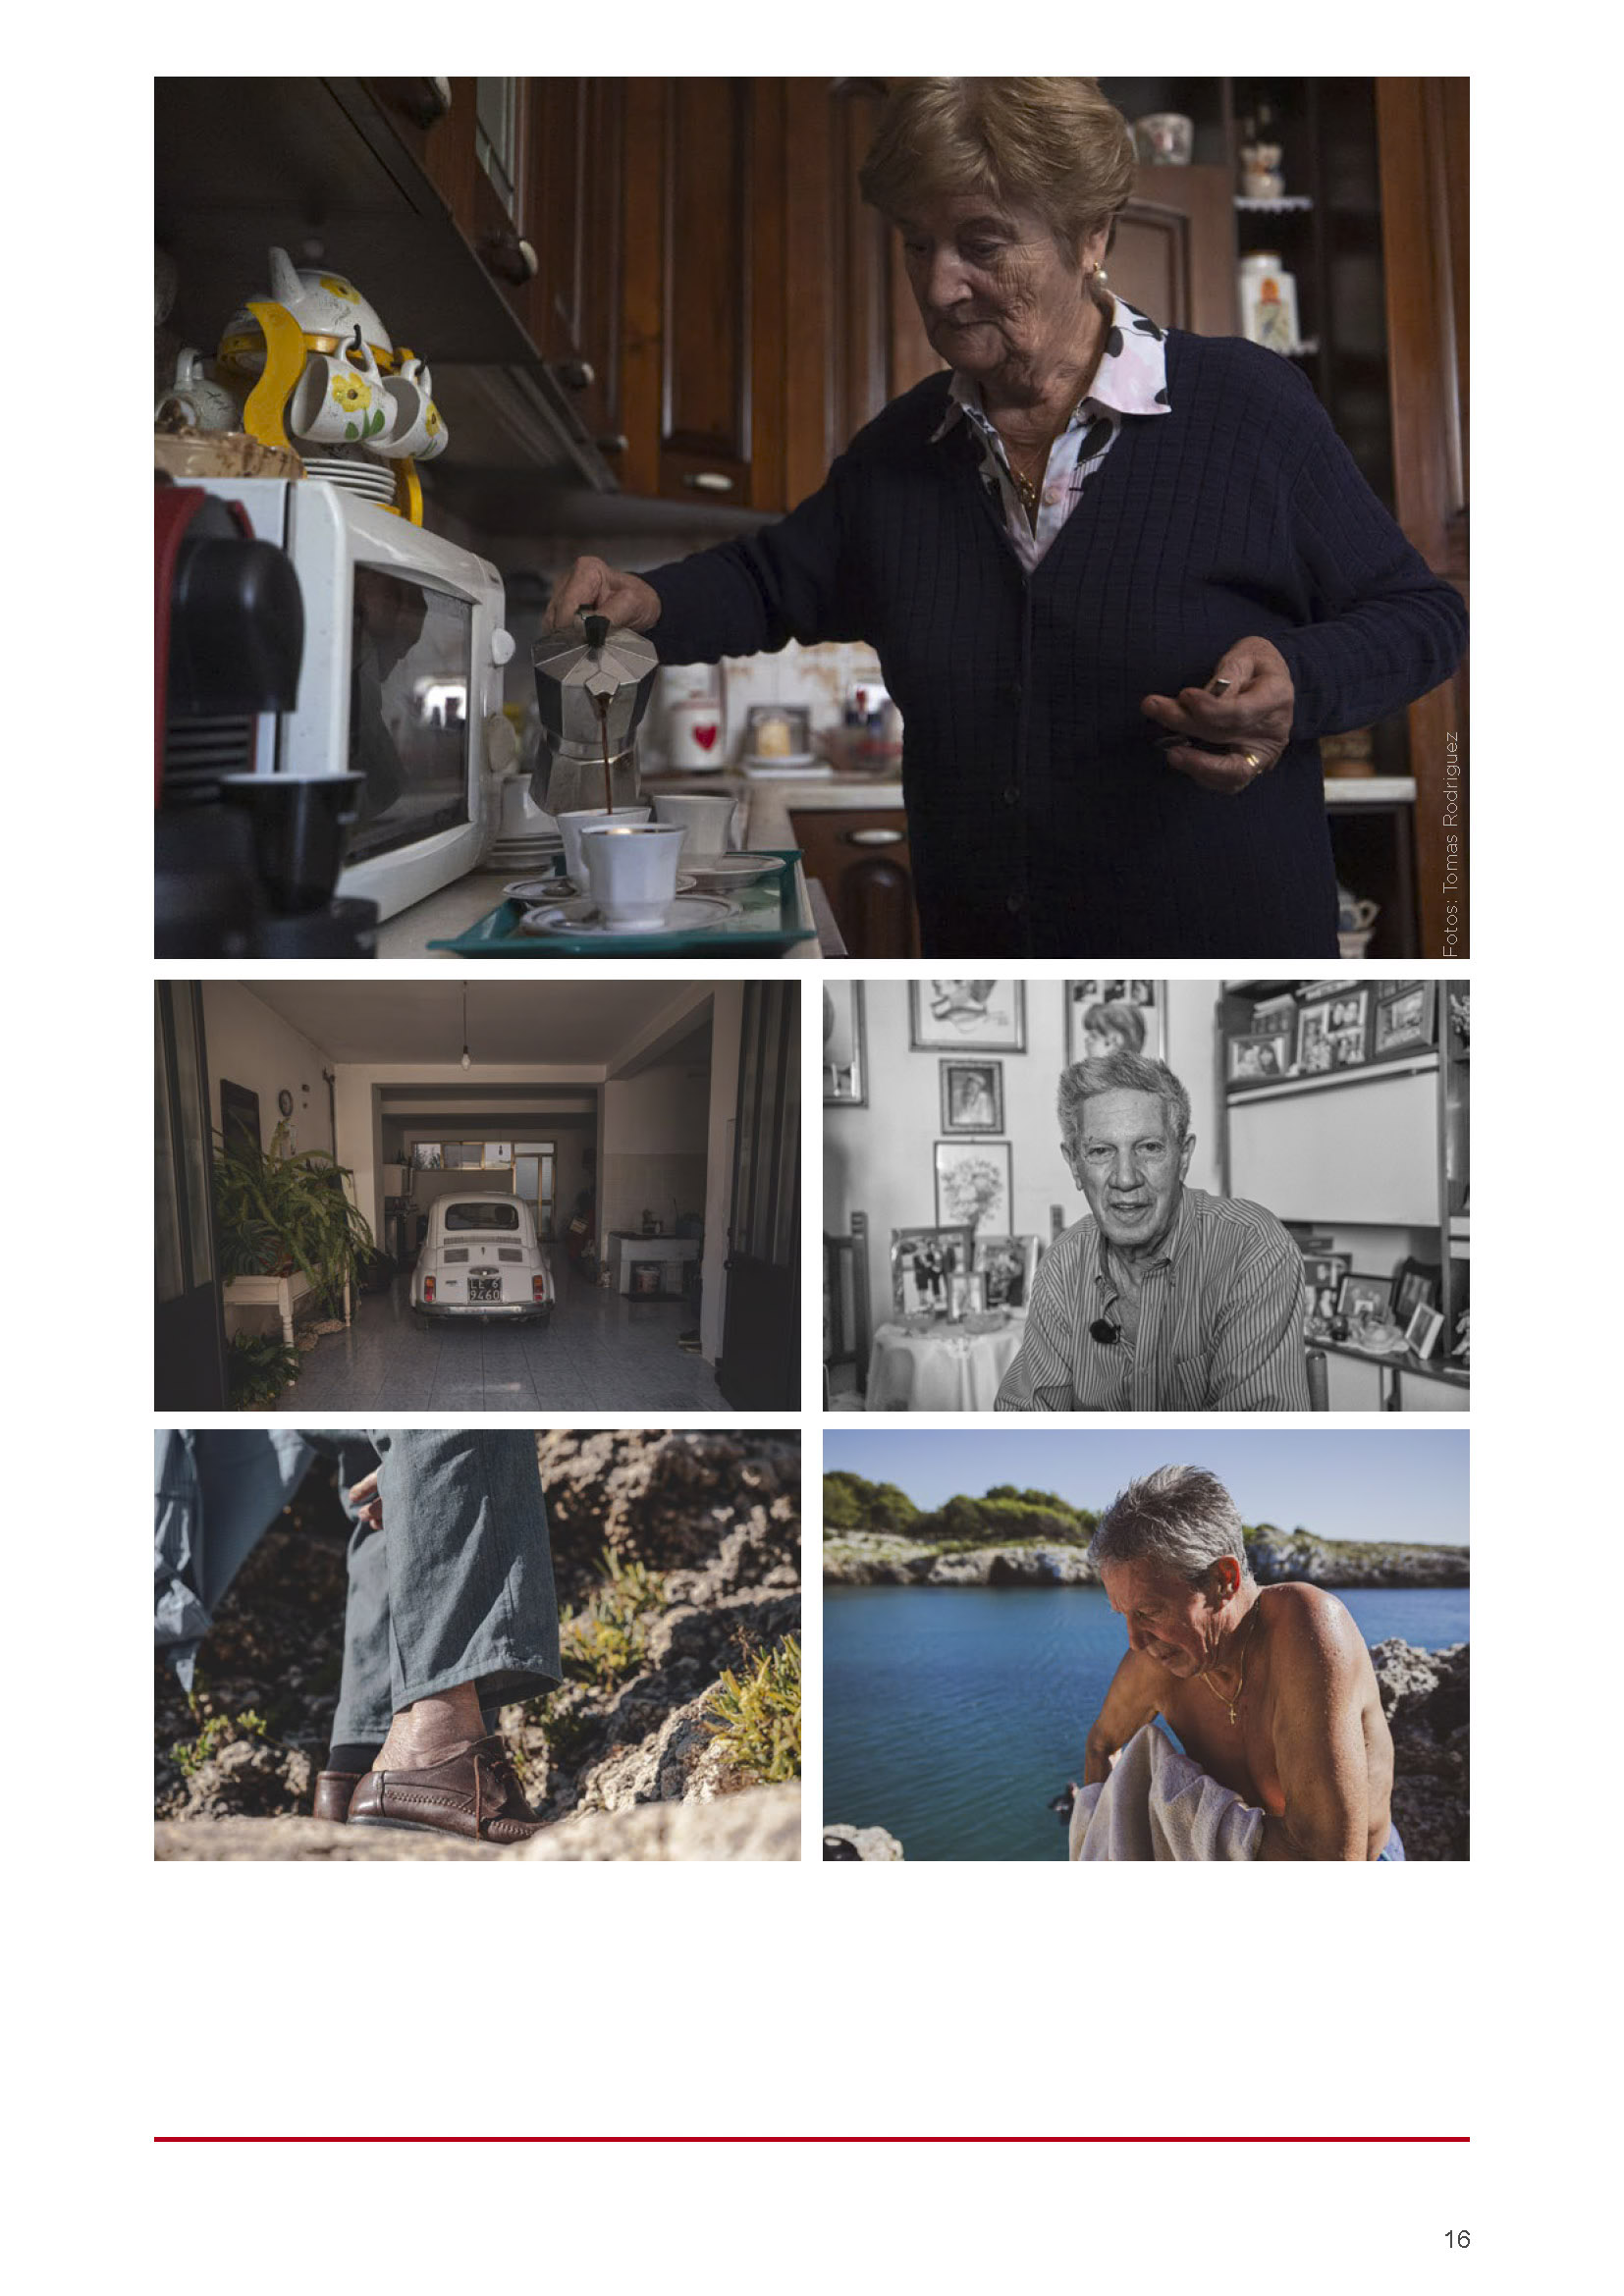 Eine ältere Frau kocht Kaffee in einer gemütlichen Küche, ein Oldtimer in einem Raum voller Pflanzen, eine Nahaufnahme der Jeans und Stiefel eines Mannes auf einem Schotterweg, ein älterer Mann ohne Hemd an einer felsigen Küste. © Fotografie Tomas Rodriguez